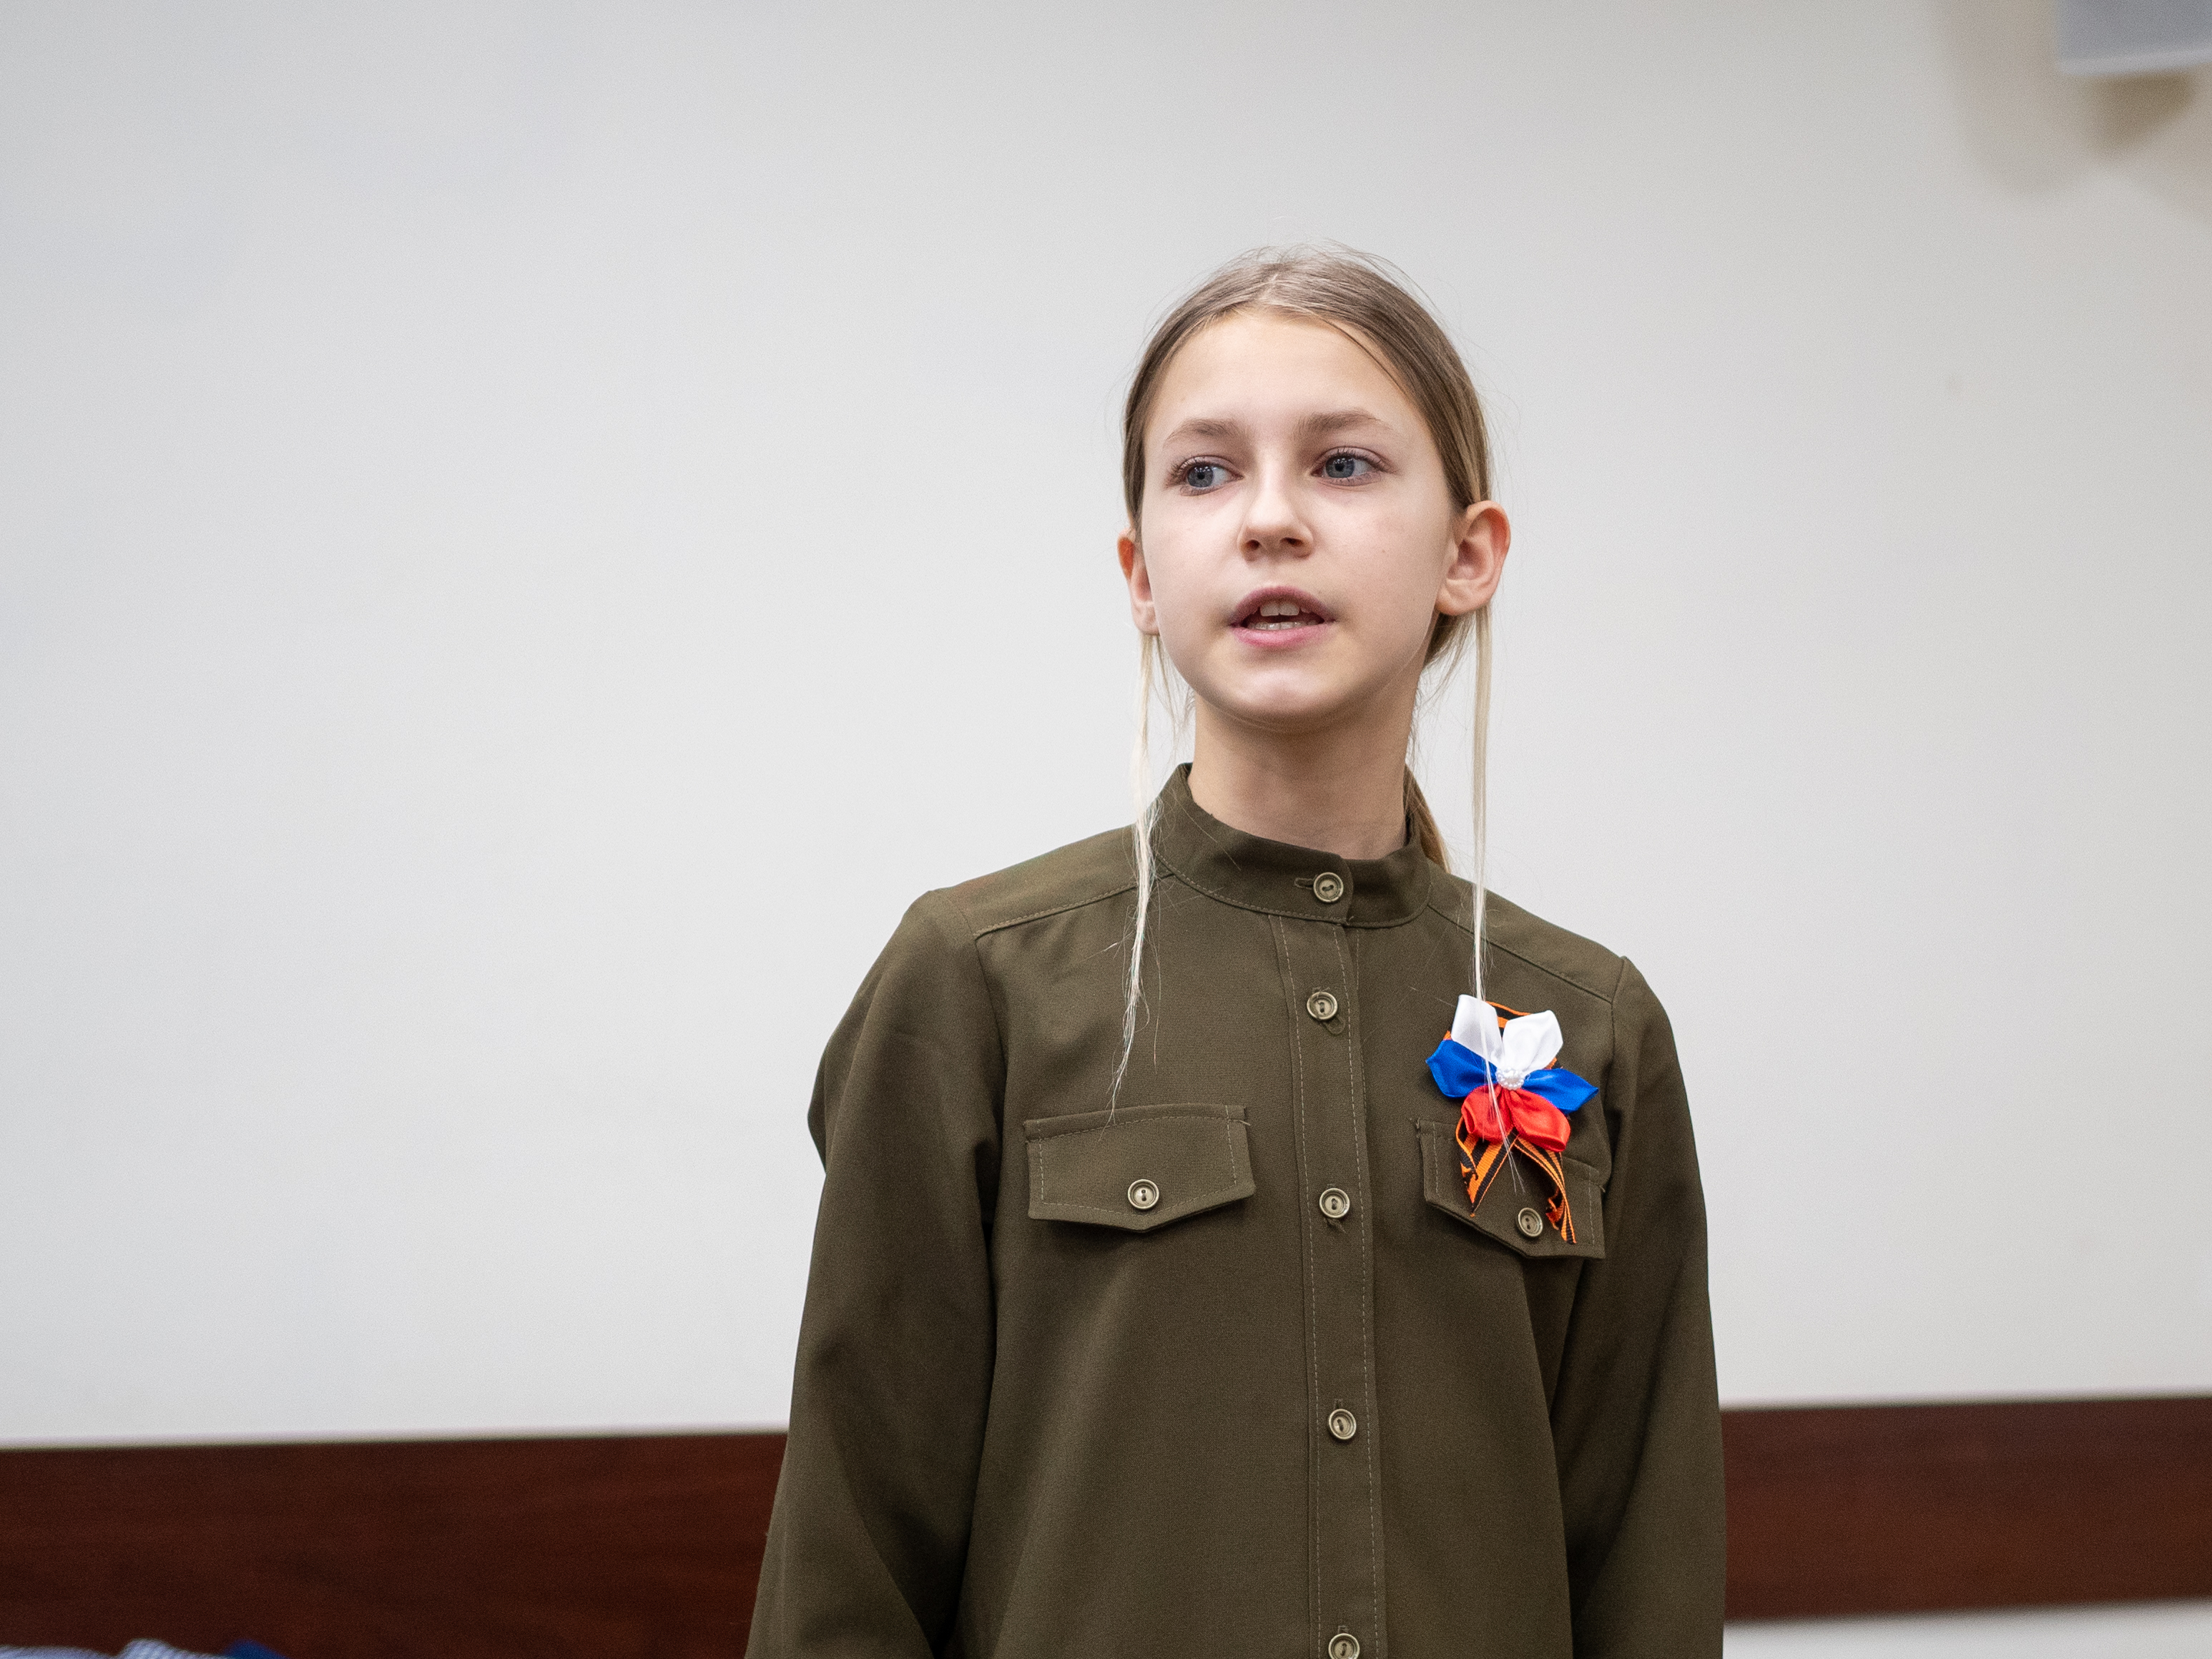 'Юные герои Великой отечественной войны'